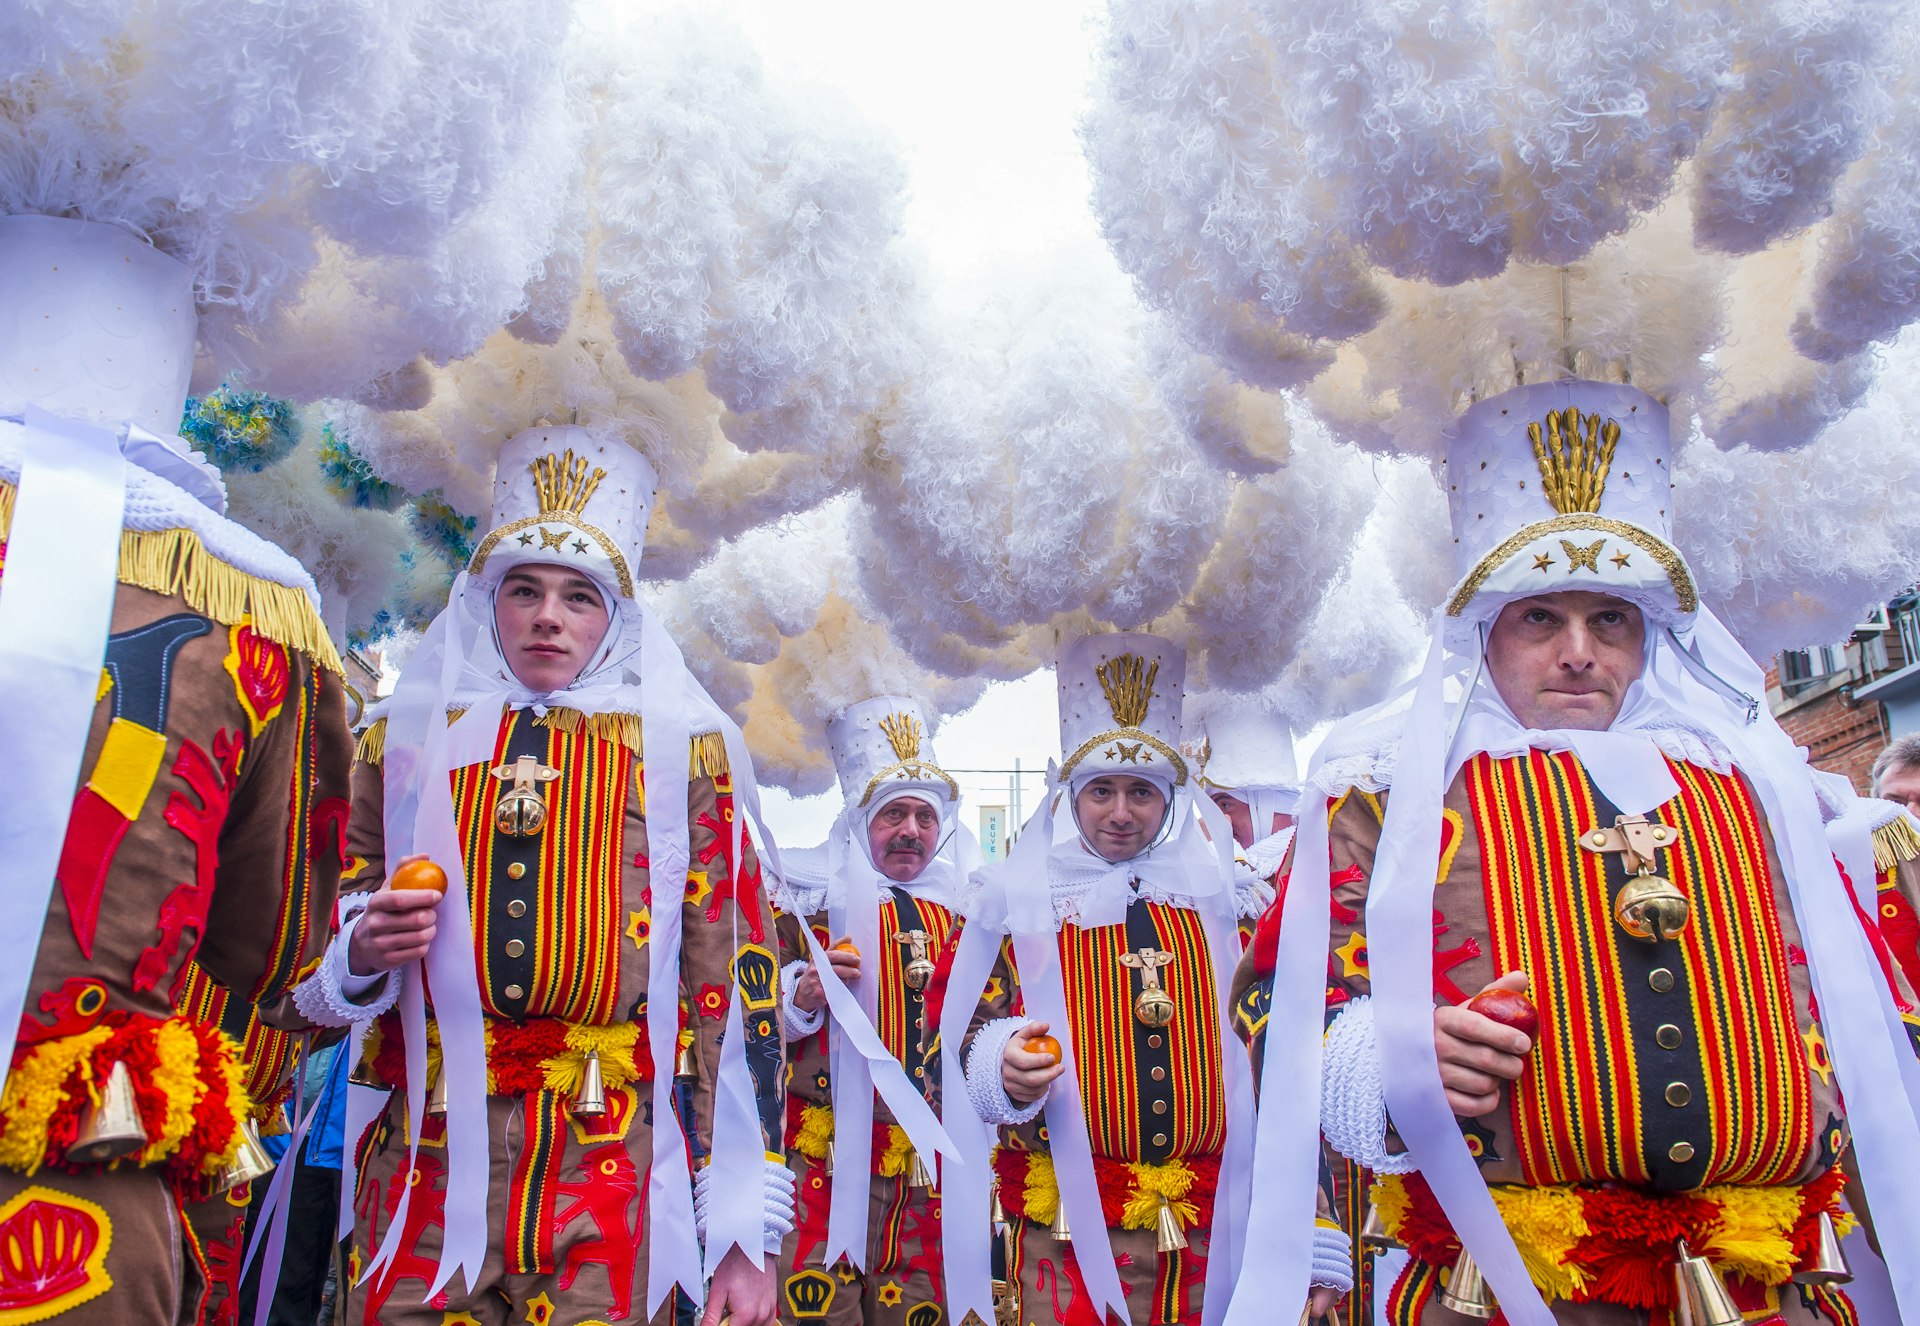 Flamboyant costumes at the Binche Carnival, Belgium